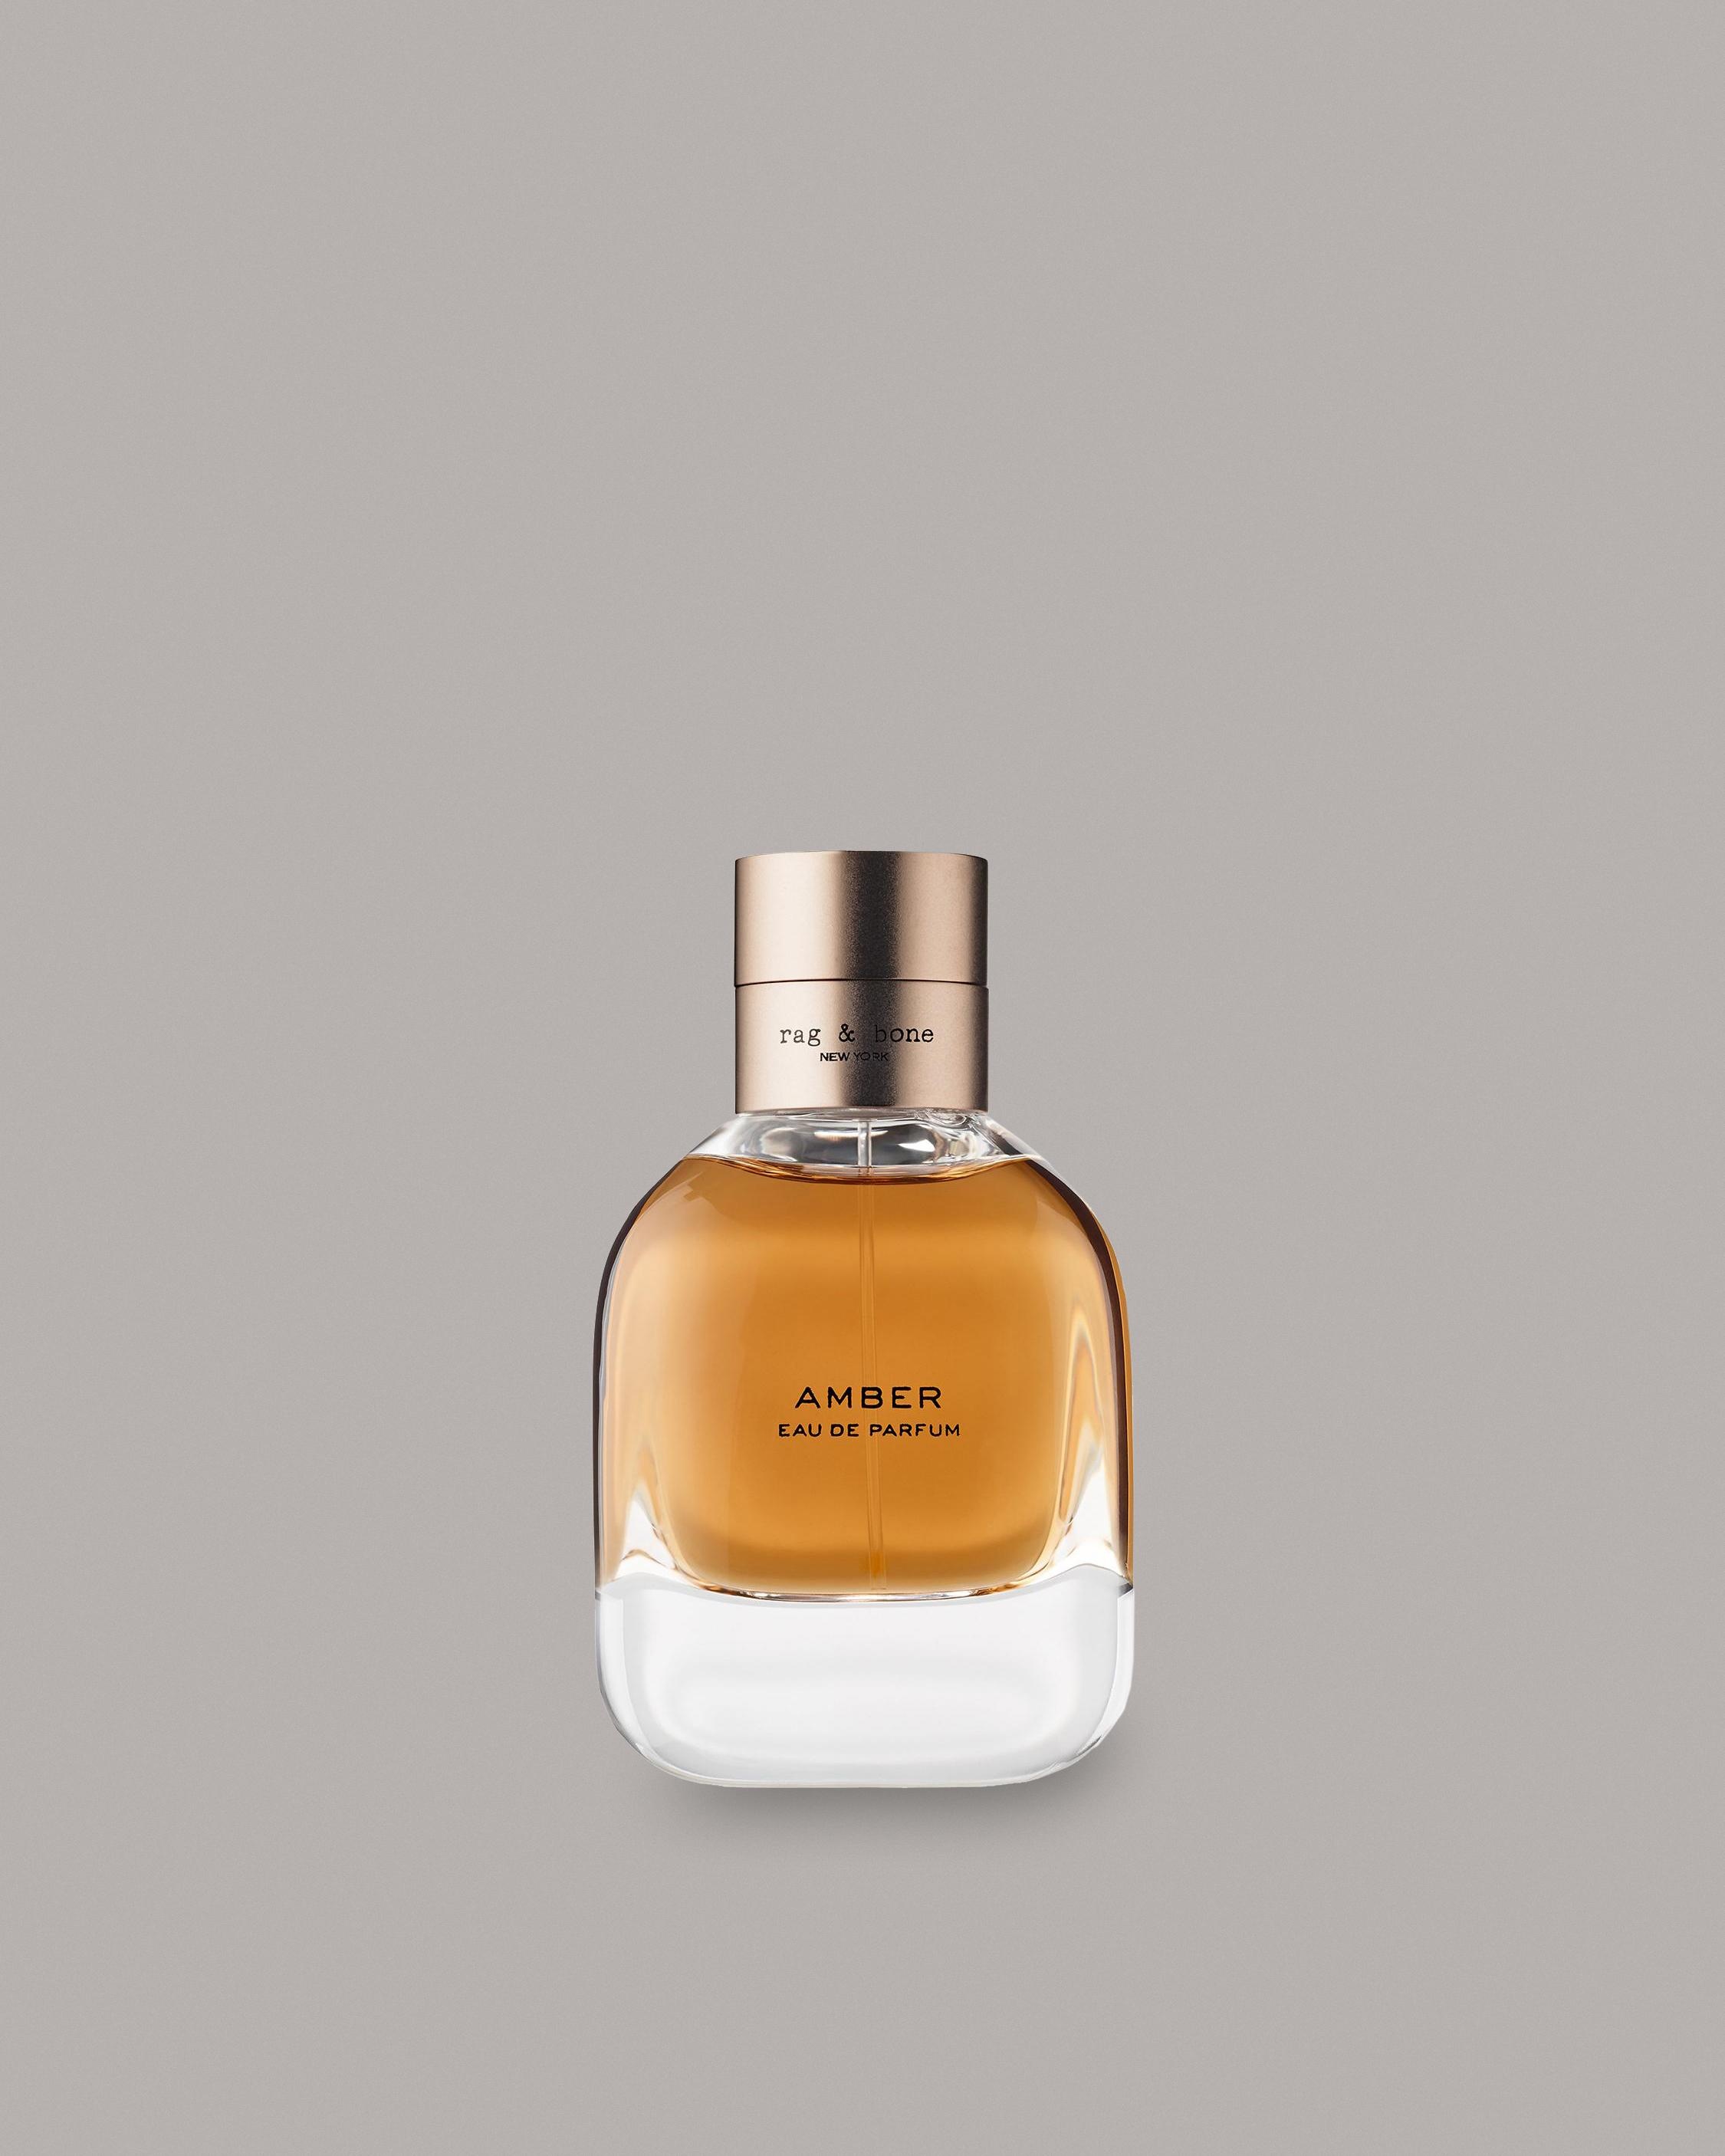 AMBER 50ML
Fragrance - 1